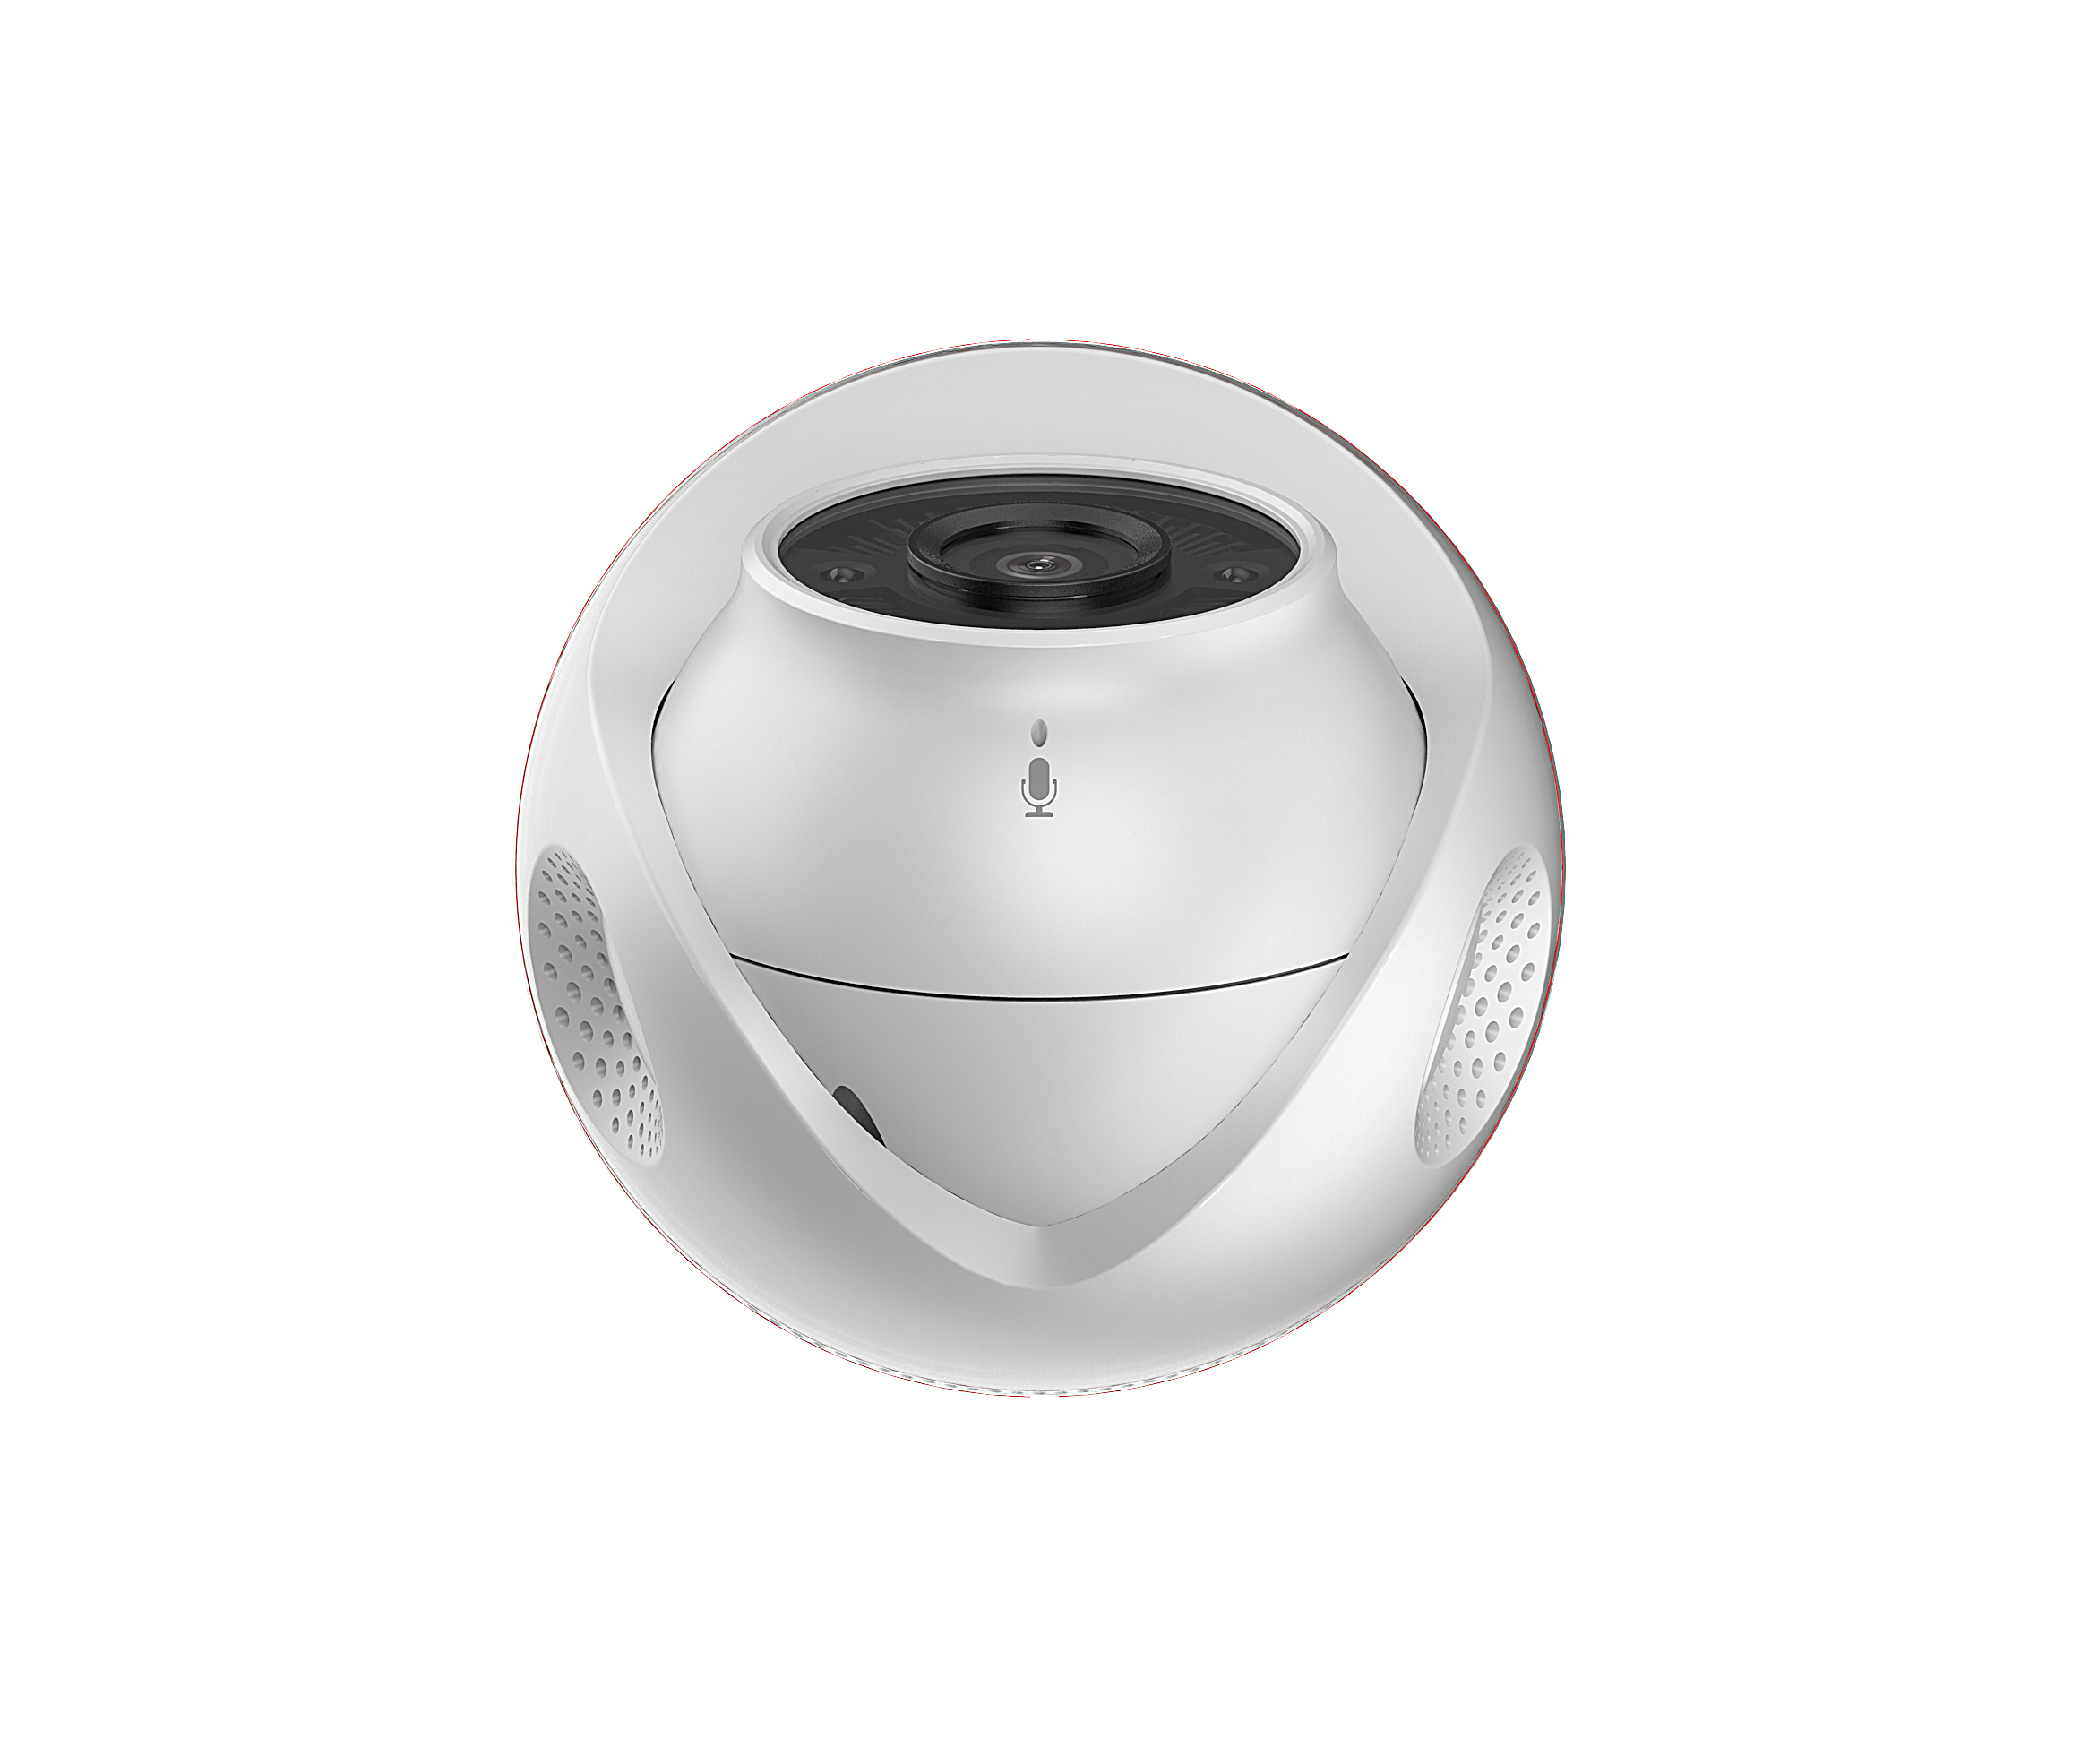 Camera EZVIZ C4W CS-CV228 2.0 Megapixel, âm thanh 2 chiều, đèn và còi báo động, hồng ngoại 30m